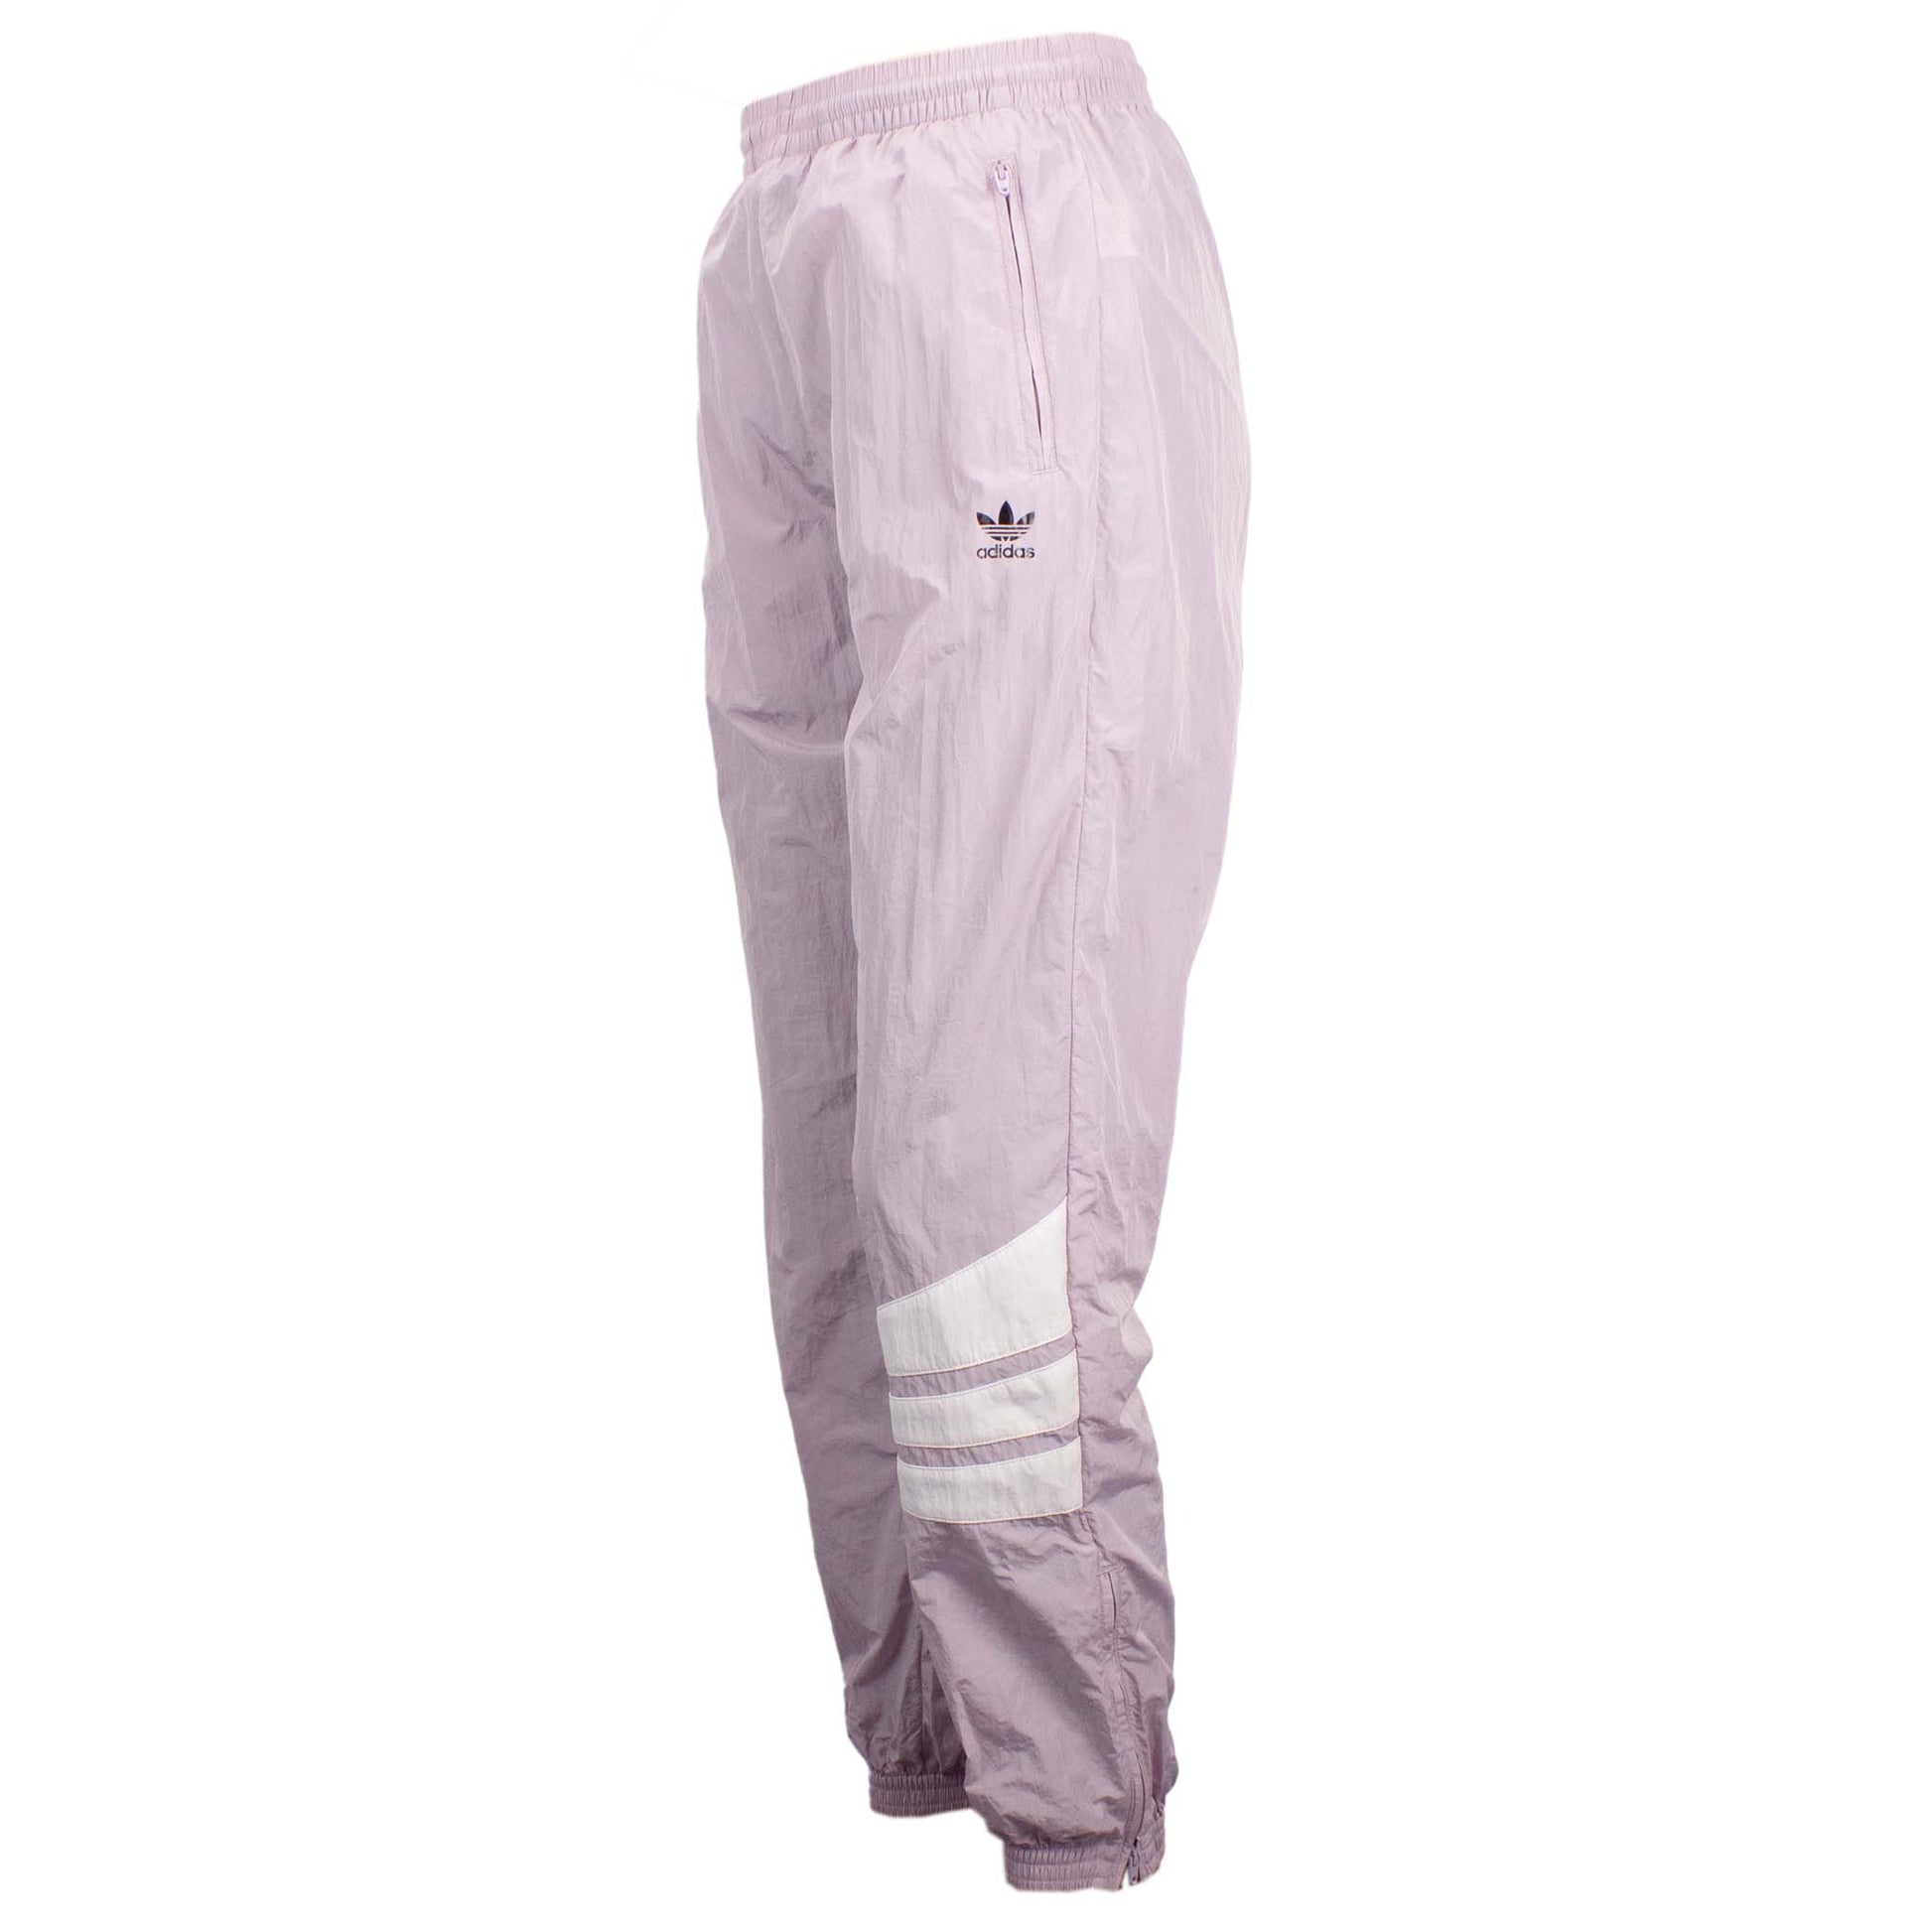 Adidas Originals Cuffed Pants Damen Hose Sporthose Jogging Violett DU9603 Gr. 34 - Brand Dealers Arena e.K. - BDA24